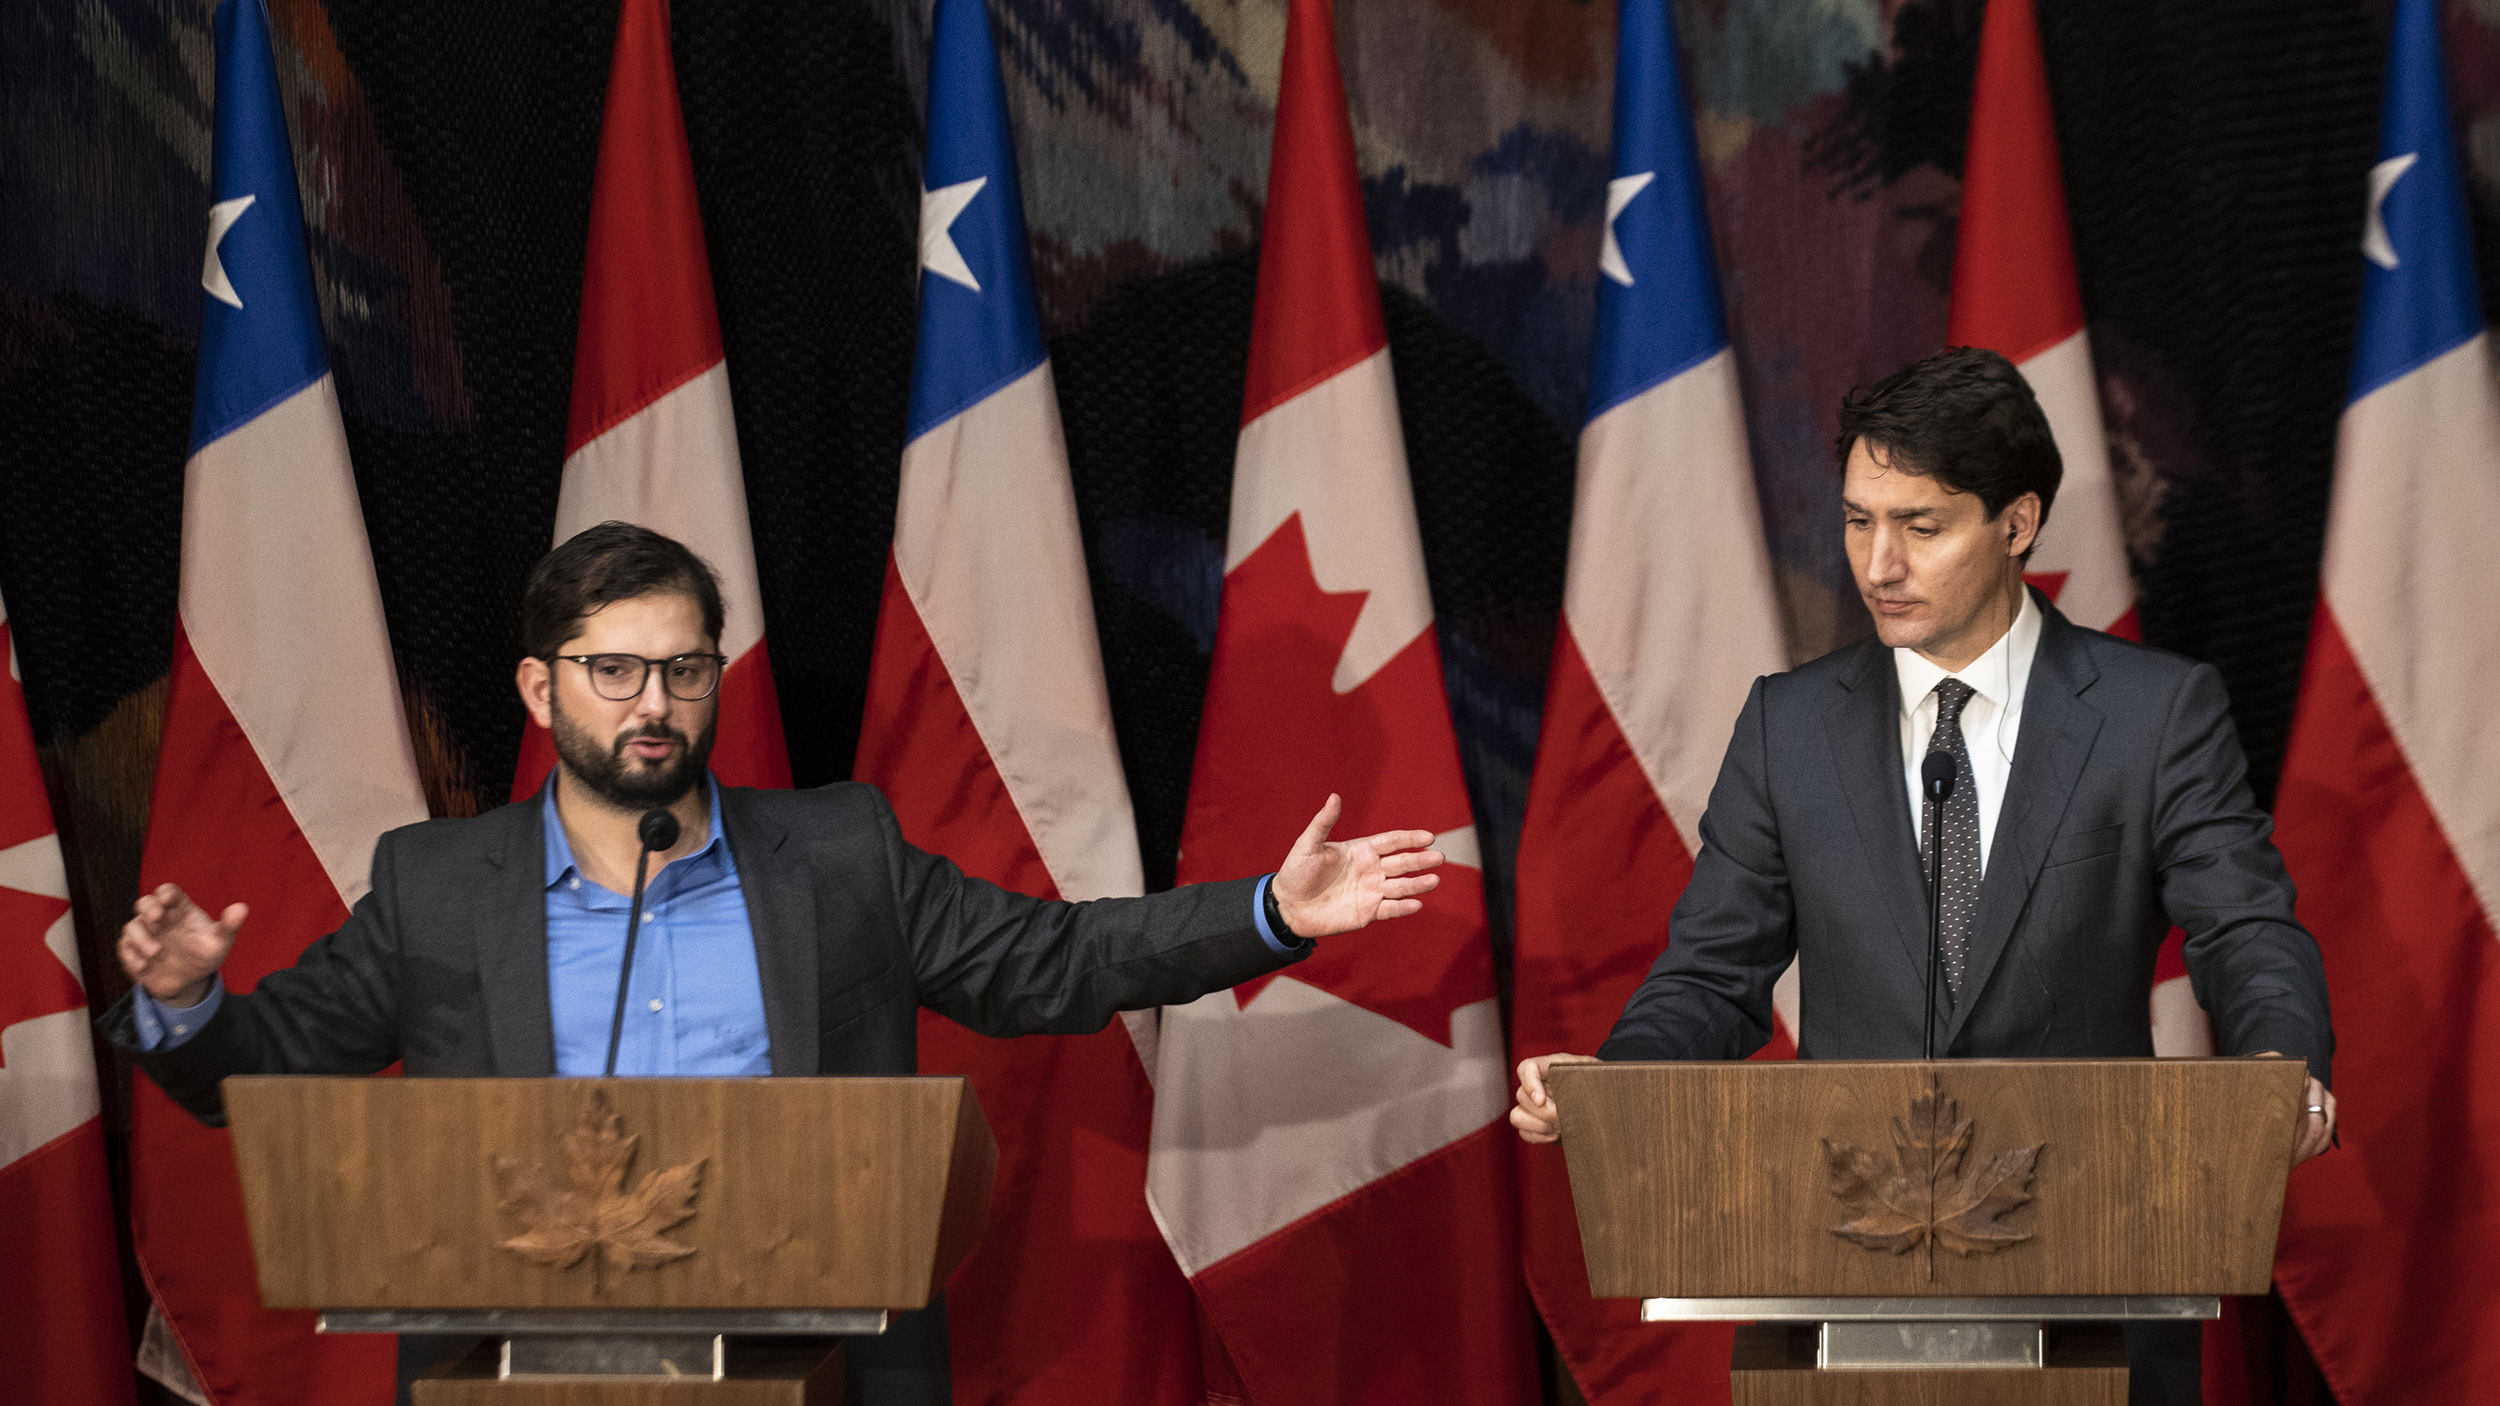 Boric le dice a Trudeau que el mundo necesita países como Canadá y Chile